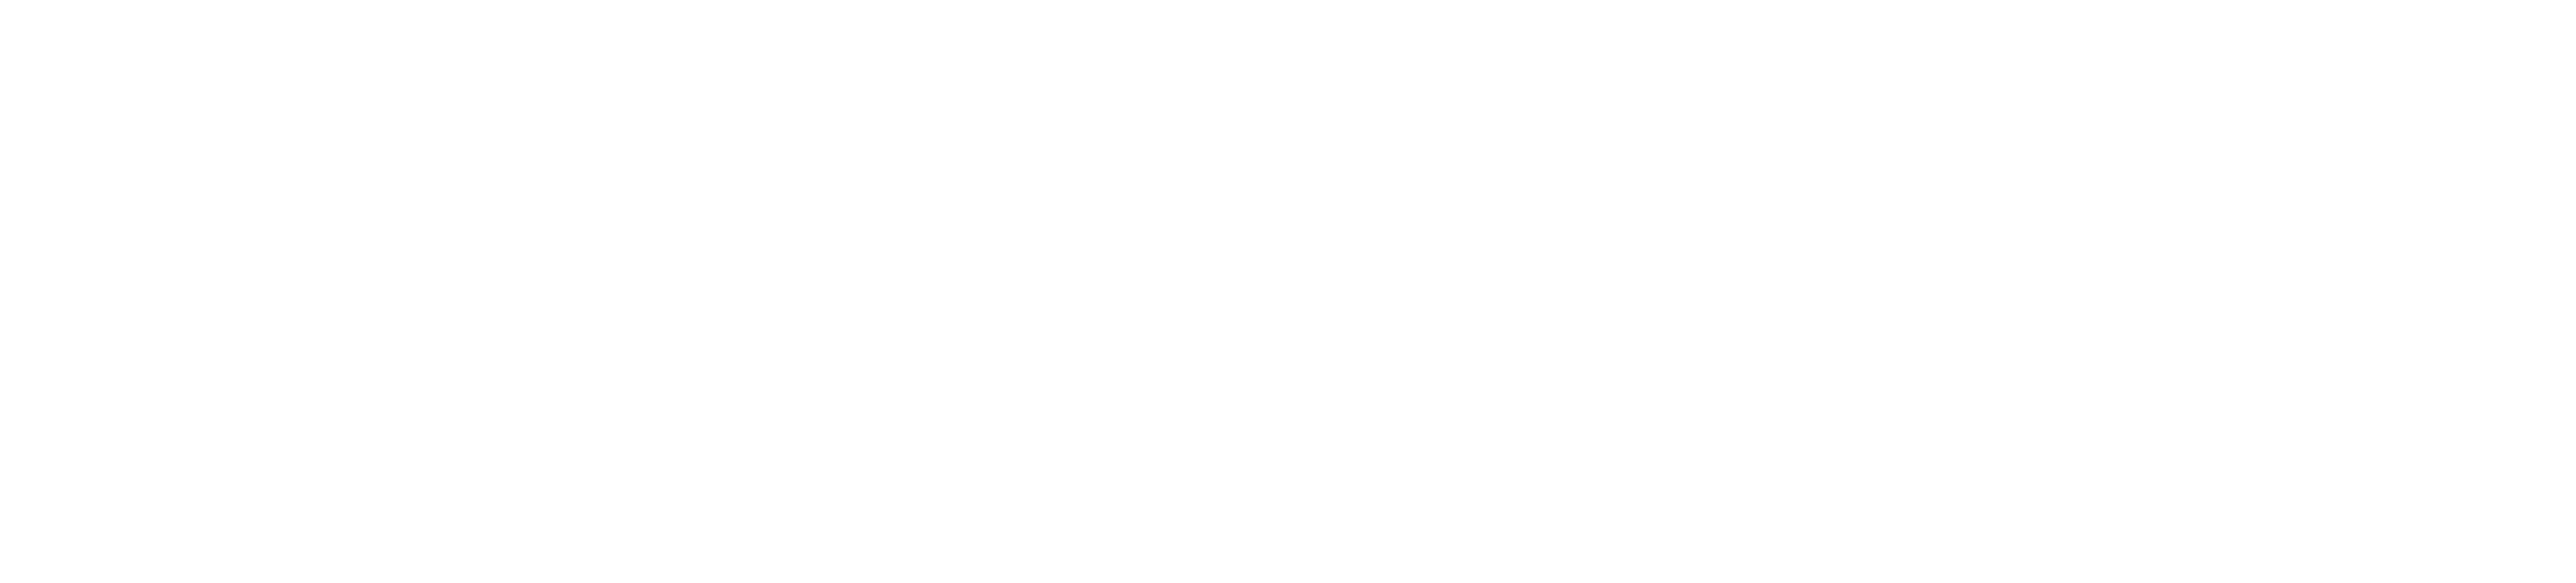 VectorSolutions_Logo_Wht-2